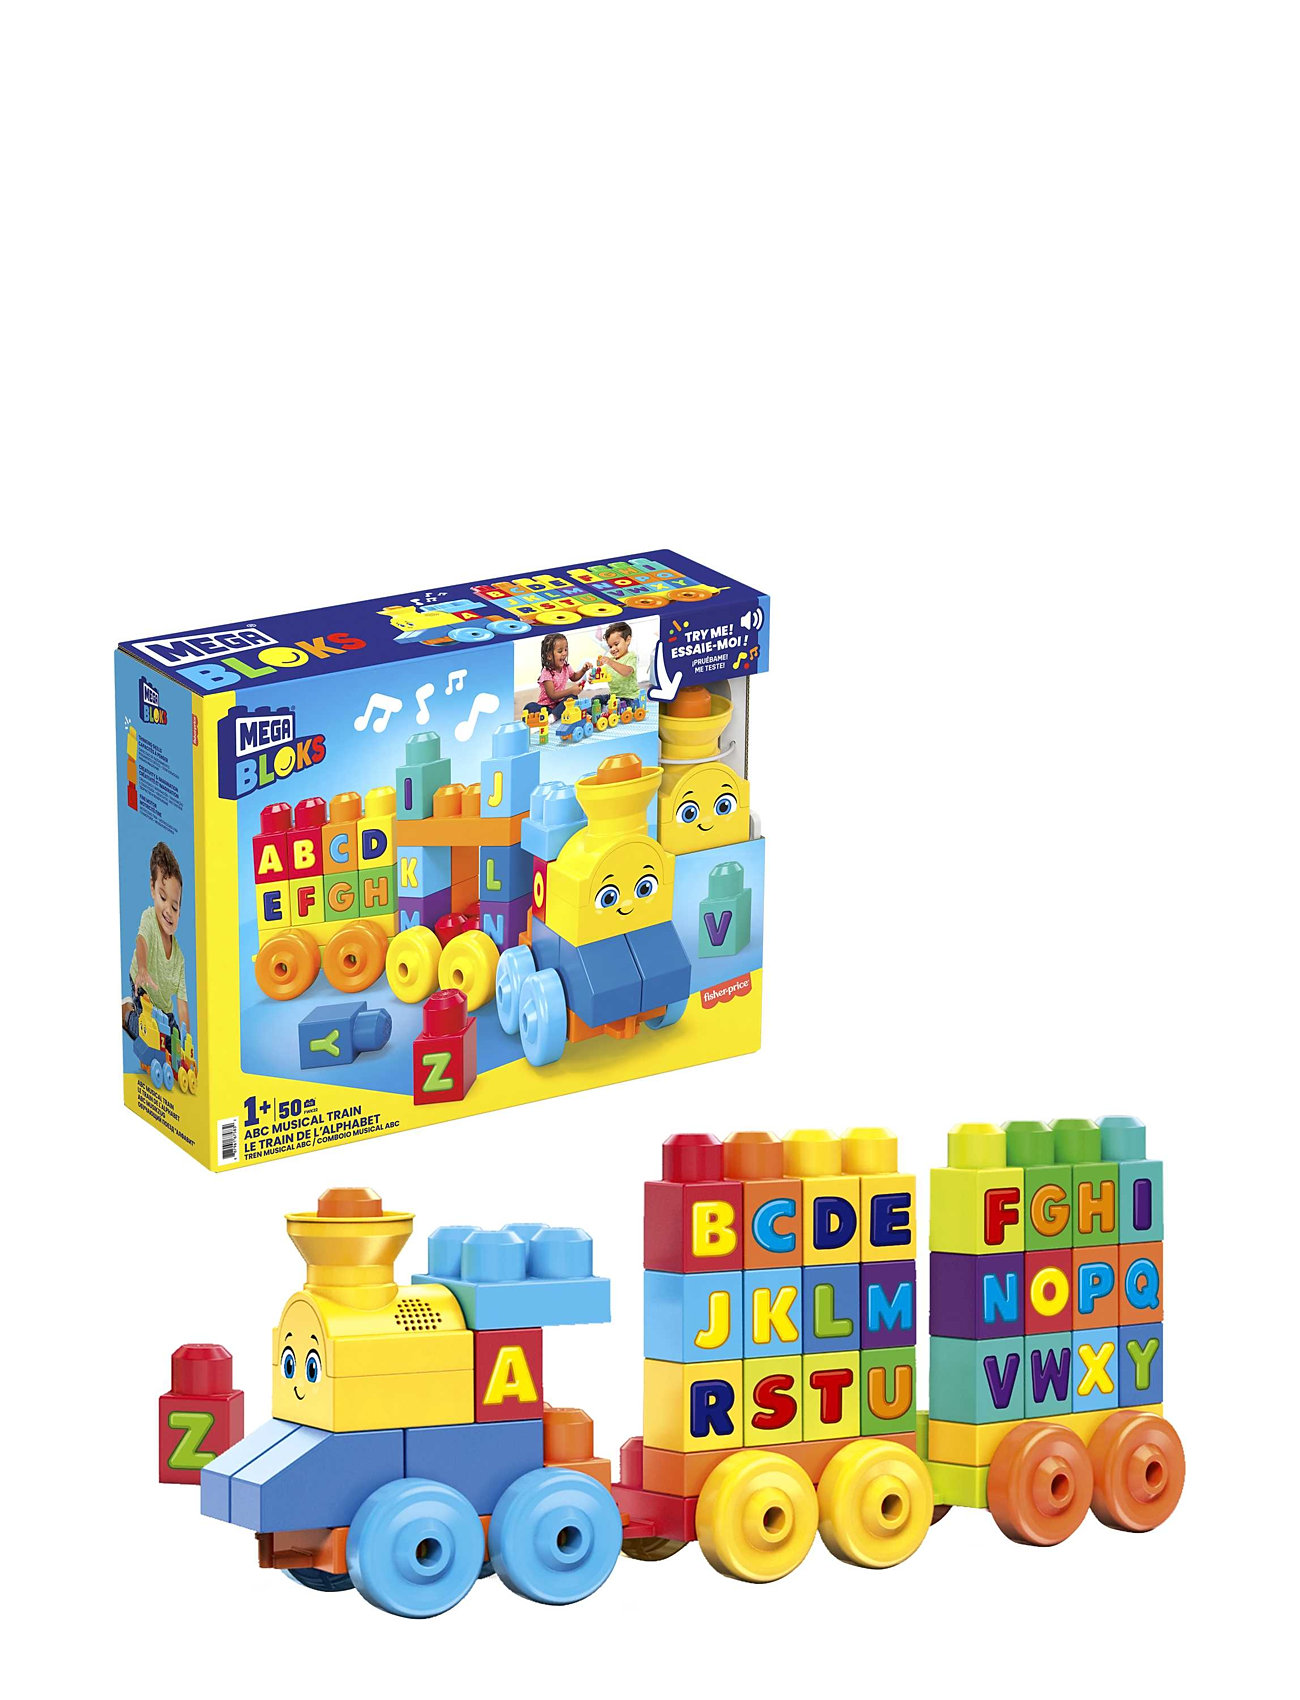 Bloks Abc Musical Train Toys Building Sets & Blocks Building Blocks Multi/patterned Mega